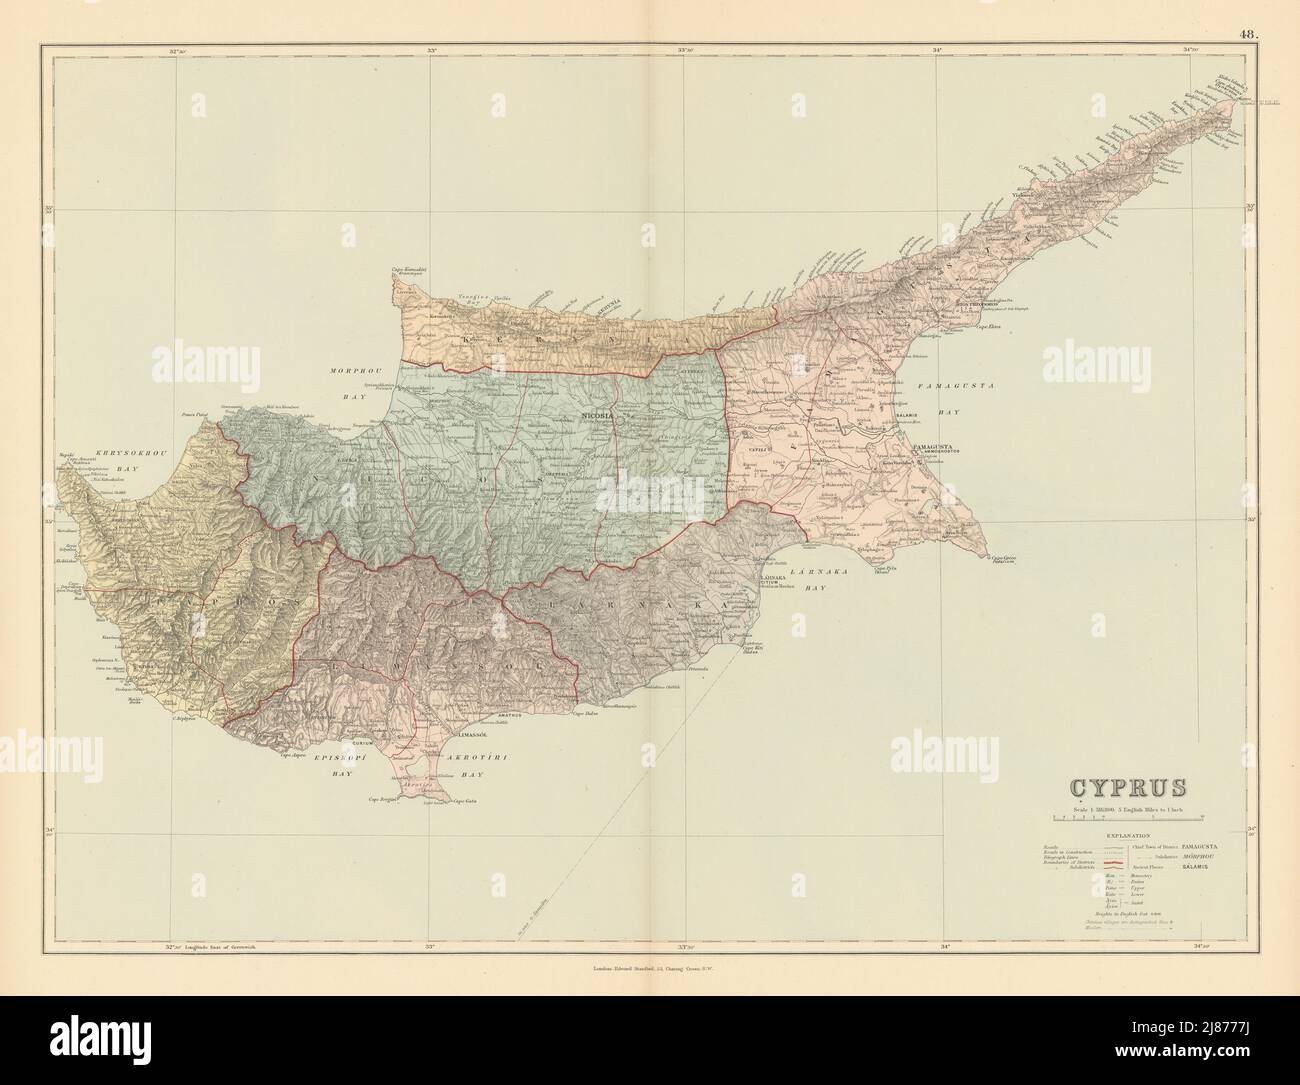 Zypern. Famagusta Kerynia Larnaca Limassol Nicosia Paphos. Karte VON STANFORD 1887 Stockfoto